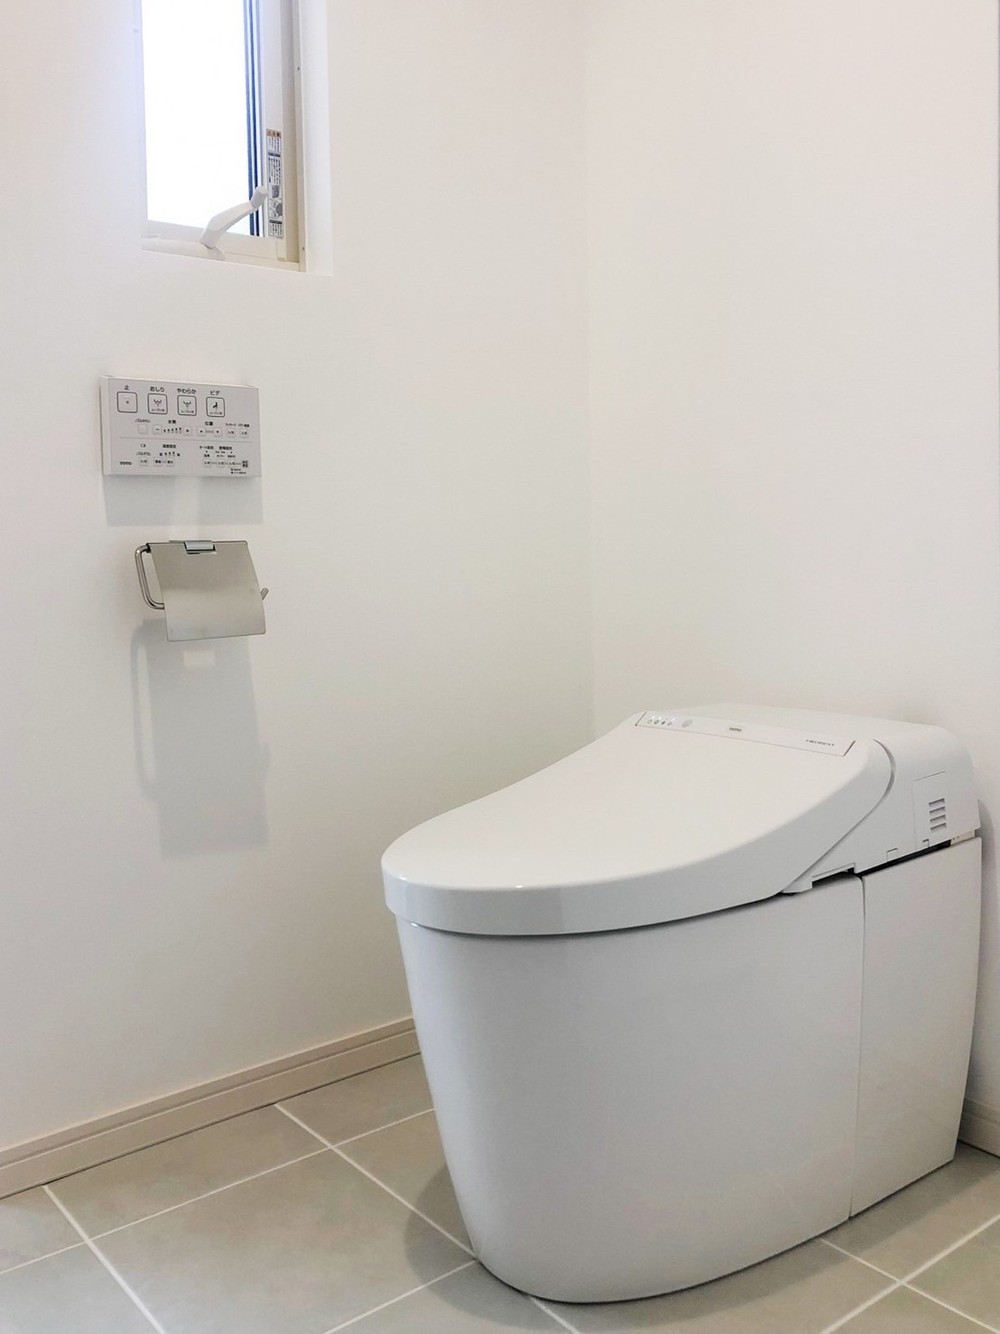 間取り変更によって広々のトイレ空間になりました。タンクレストイレにリフォームすることで清掃性はもちろん、空間のデザイン性もホテルライクにぴったりです。